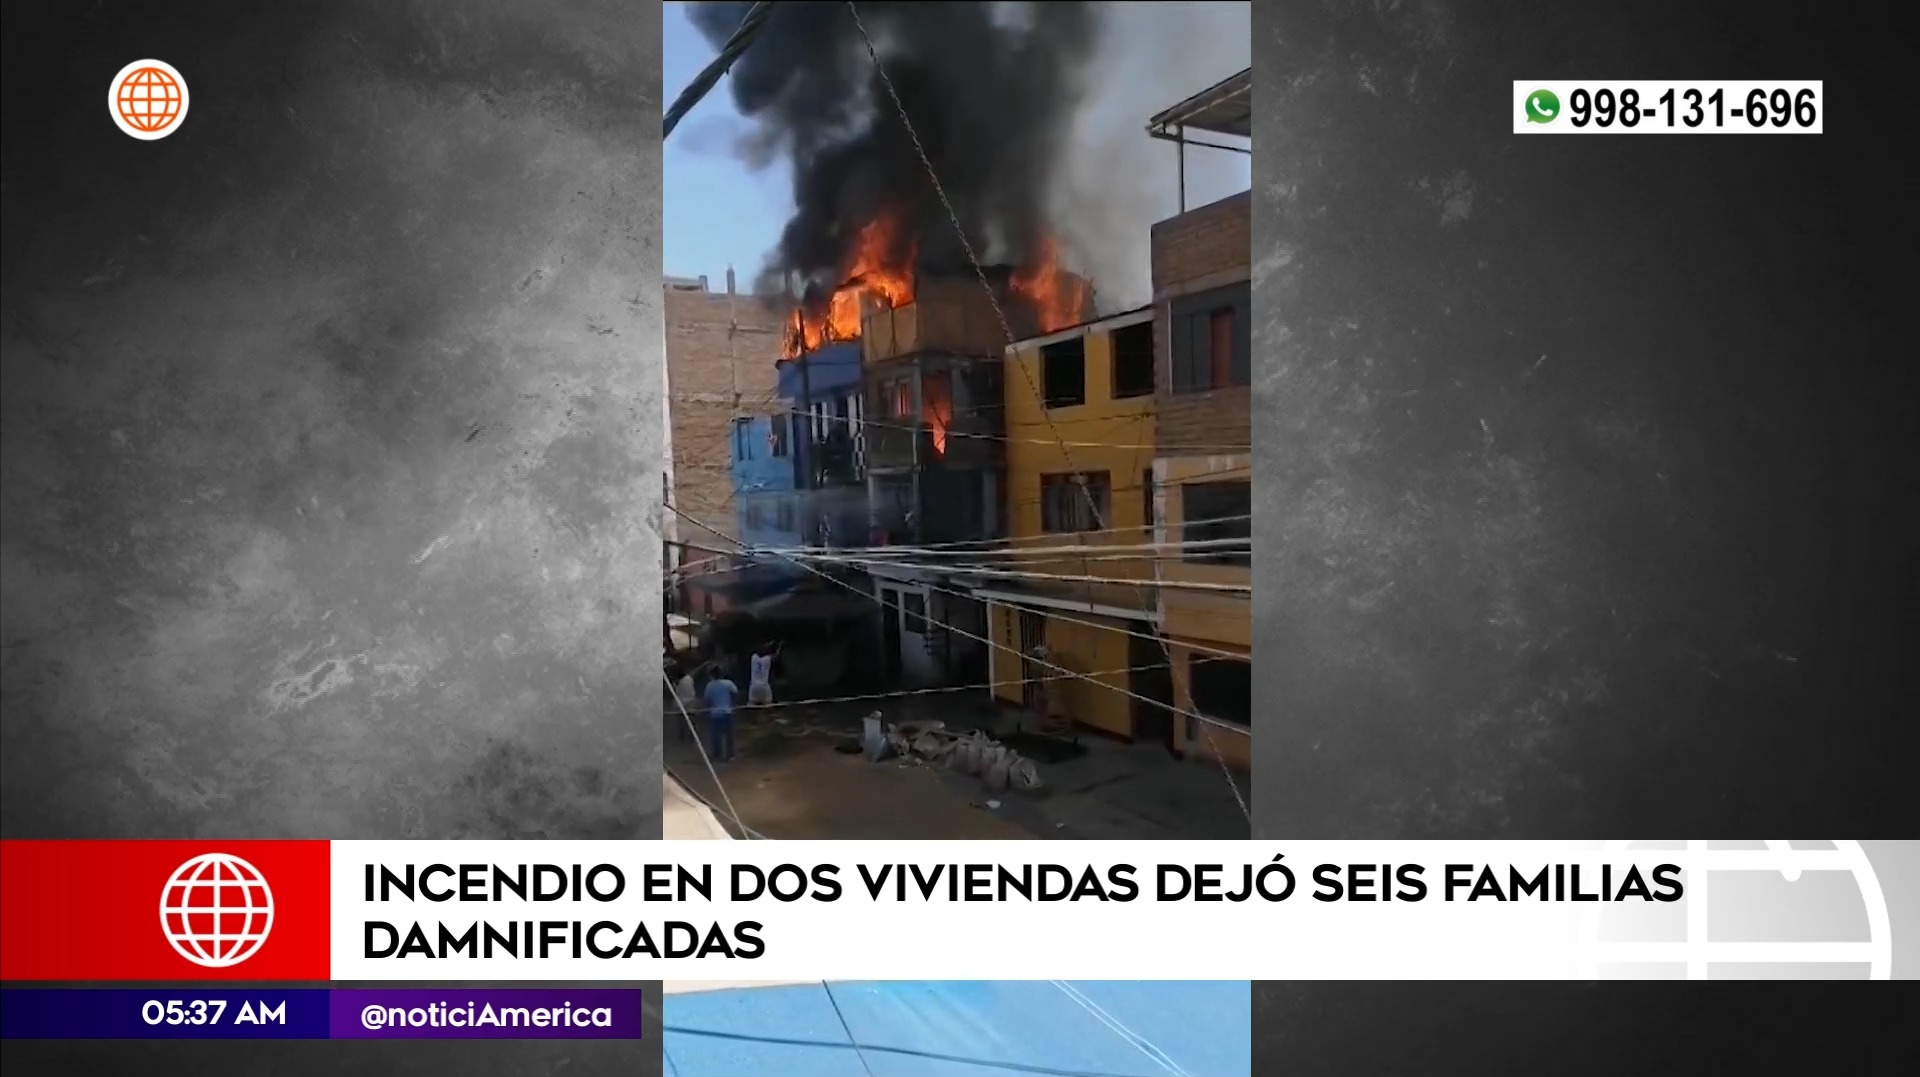 Incendio en San Juan de Miraflores. Foto: América Noticias